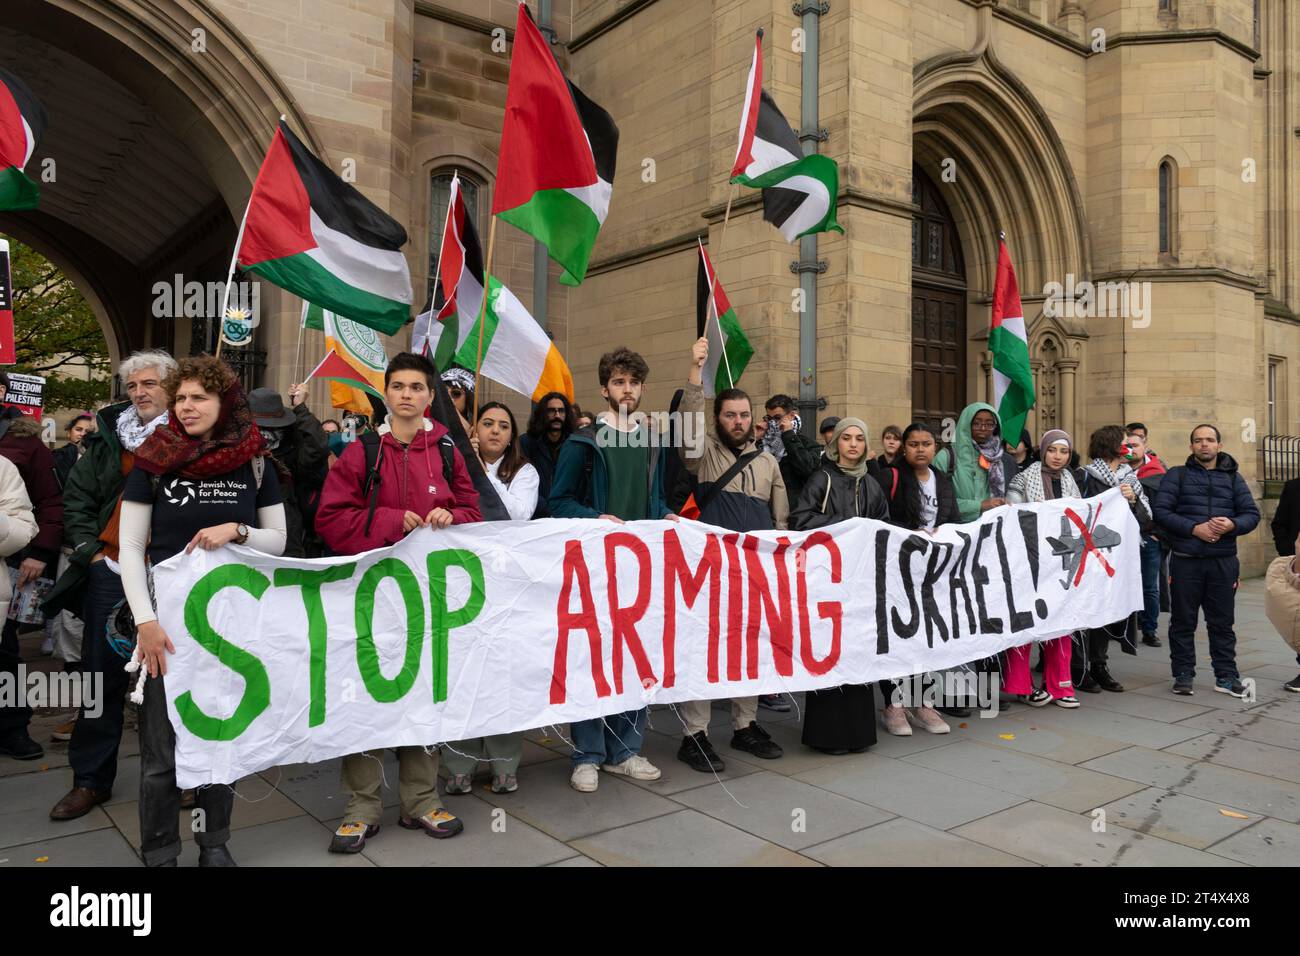 Université de Manchester. Protestation contre le génocide de Gaza, Palestine et Graphene Institute. Texte de la bannière Arrêtez d'armer Israël. Whitworth Building, Oxford Banque D'Images